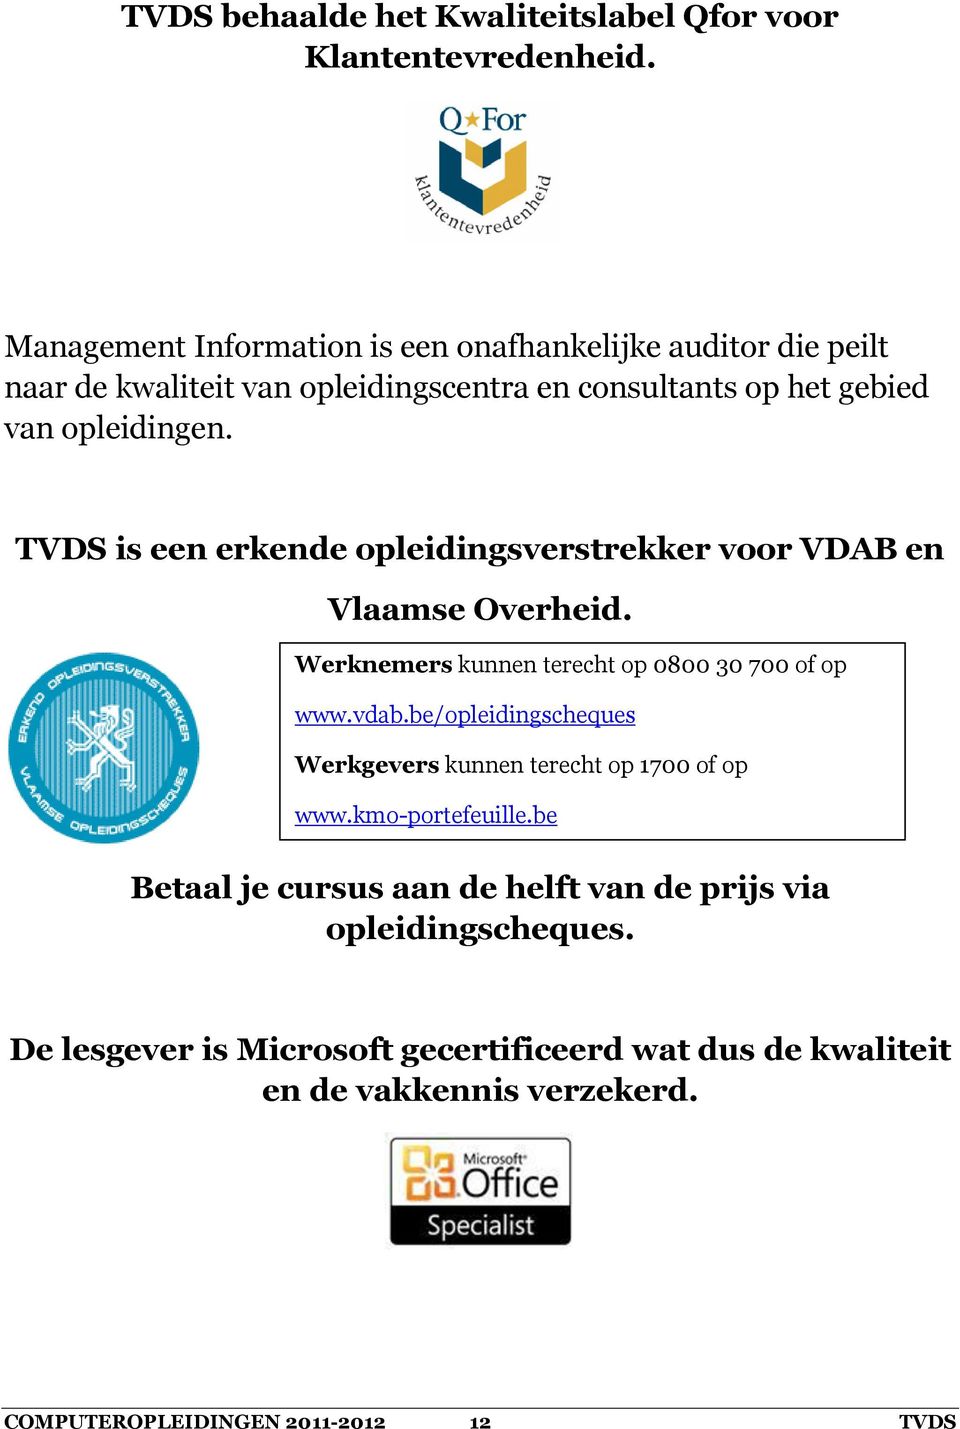 TVDS is een erkende opleidingsverstrekker voor VDAB en Vlaamse Overheid. Werknemers kunnen terecht op 0800 30 700 of op www.vdab.